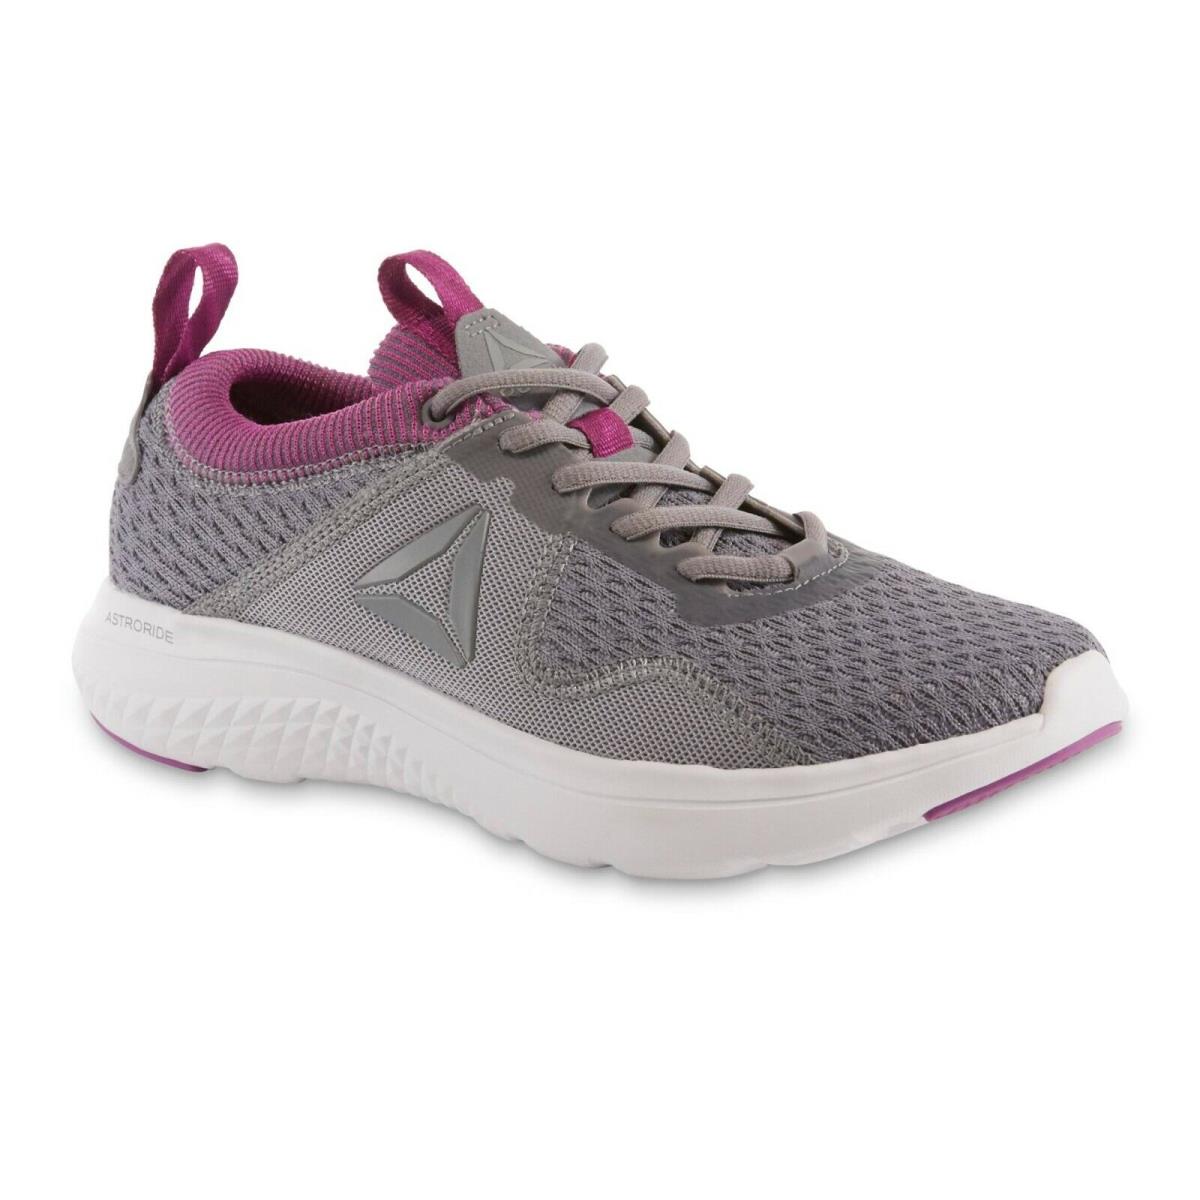 Reebok Ladies Running Tennis Shoe Grey Size 8 1/2 Med